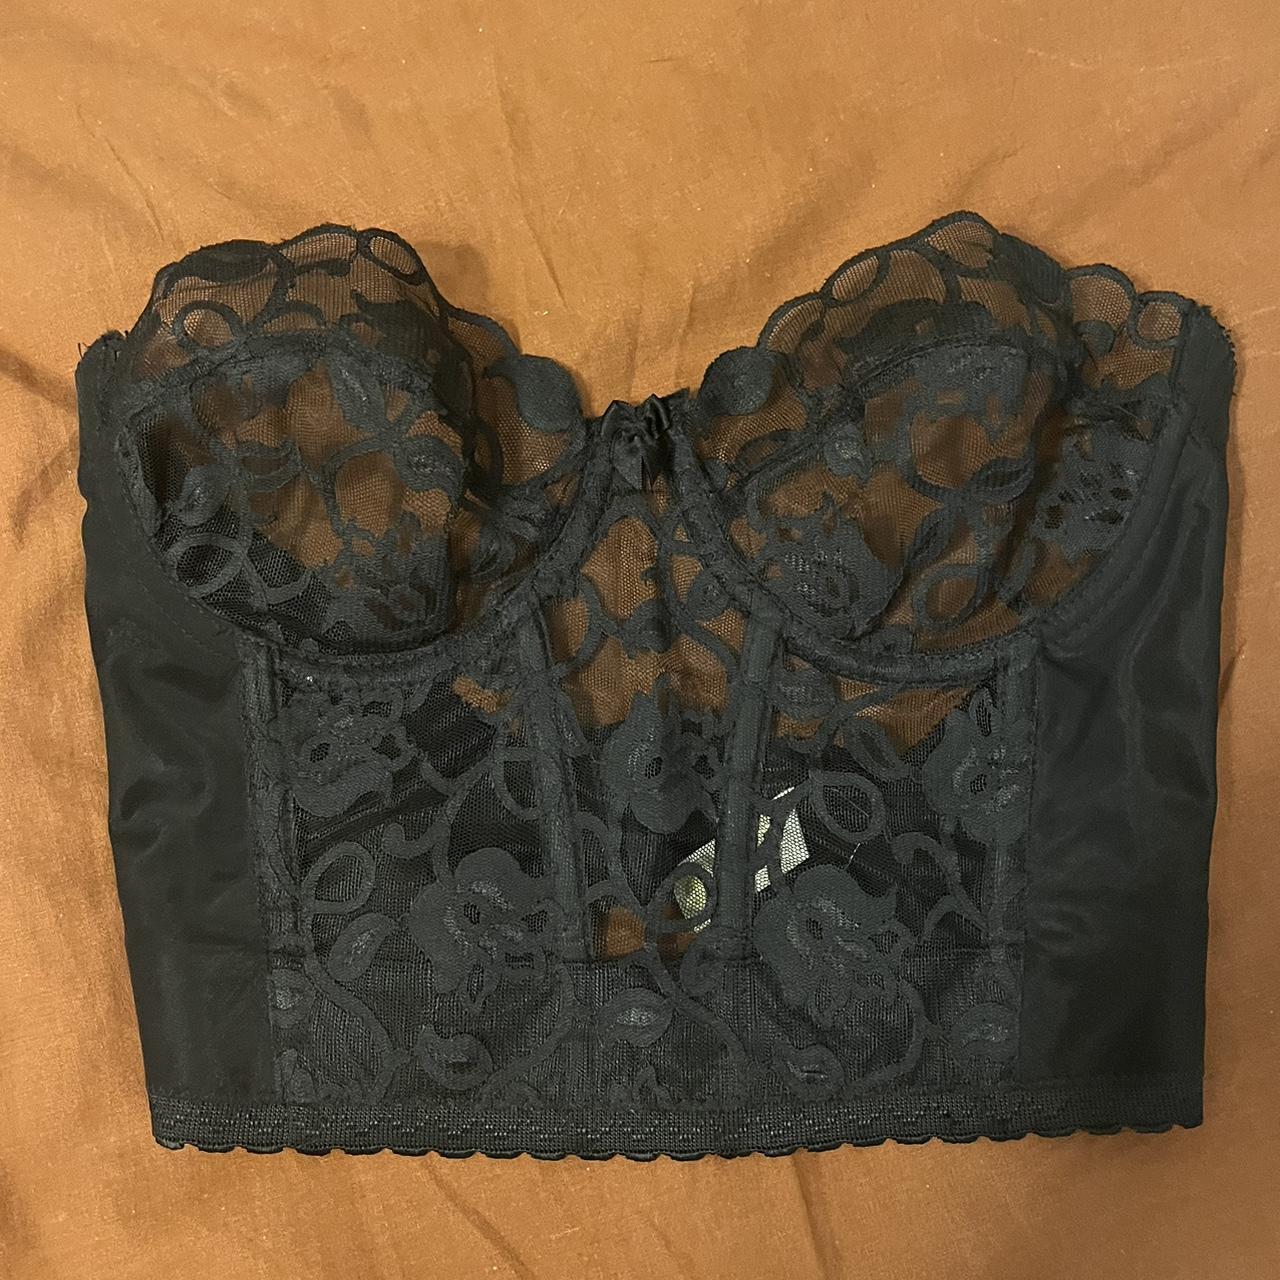 Re-pop Victoria secret gold label black lace corset... - Depop